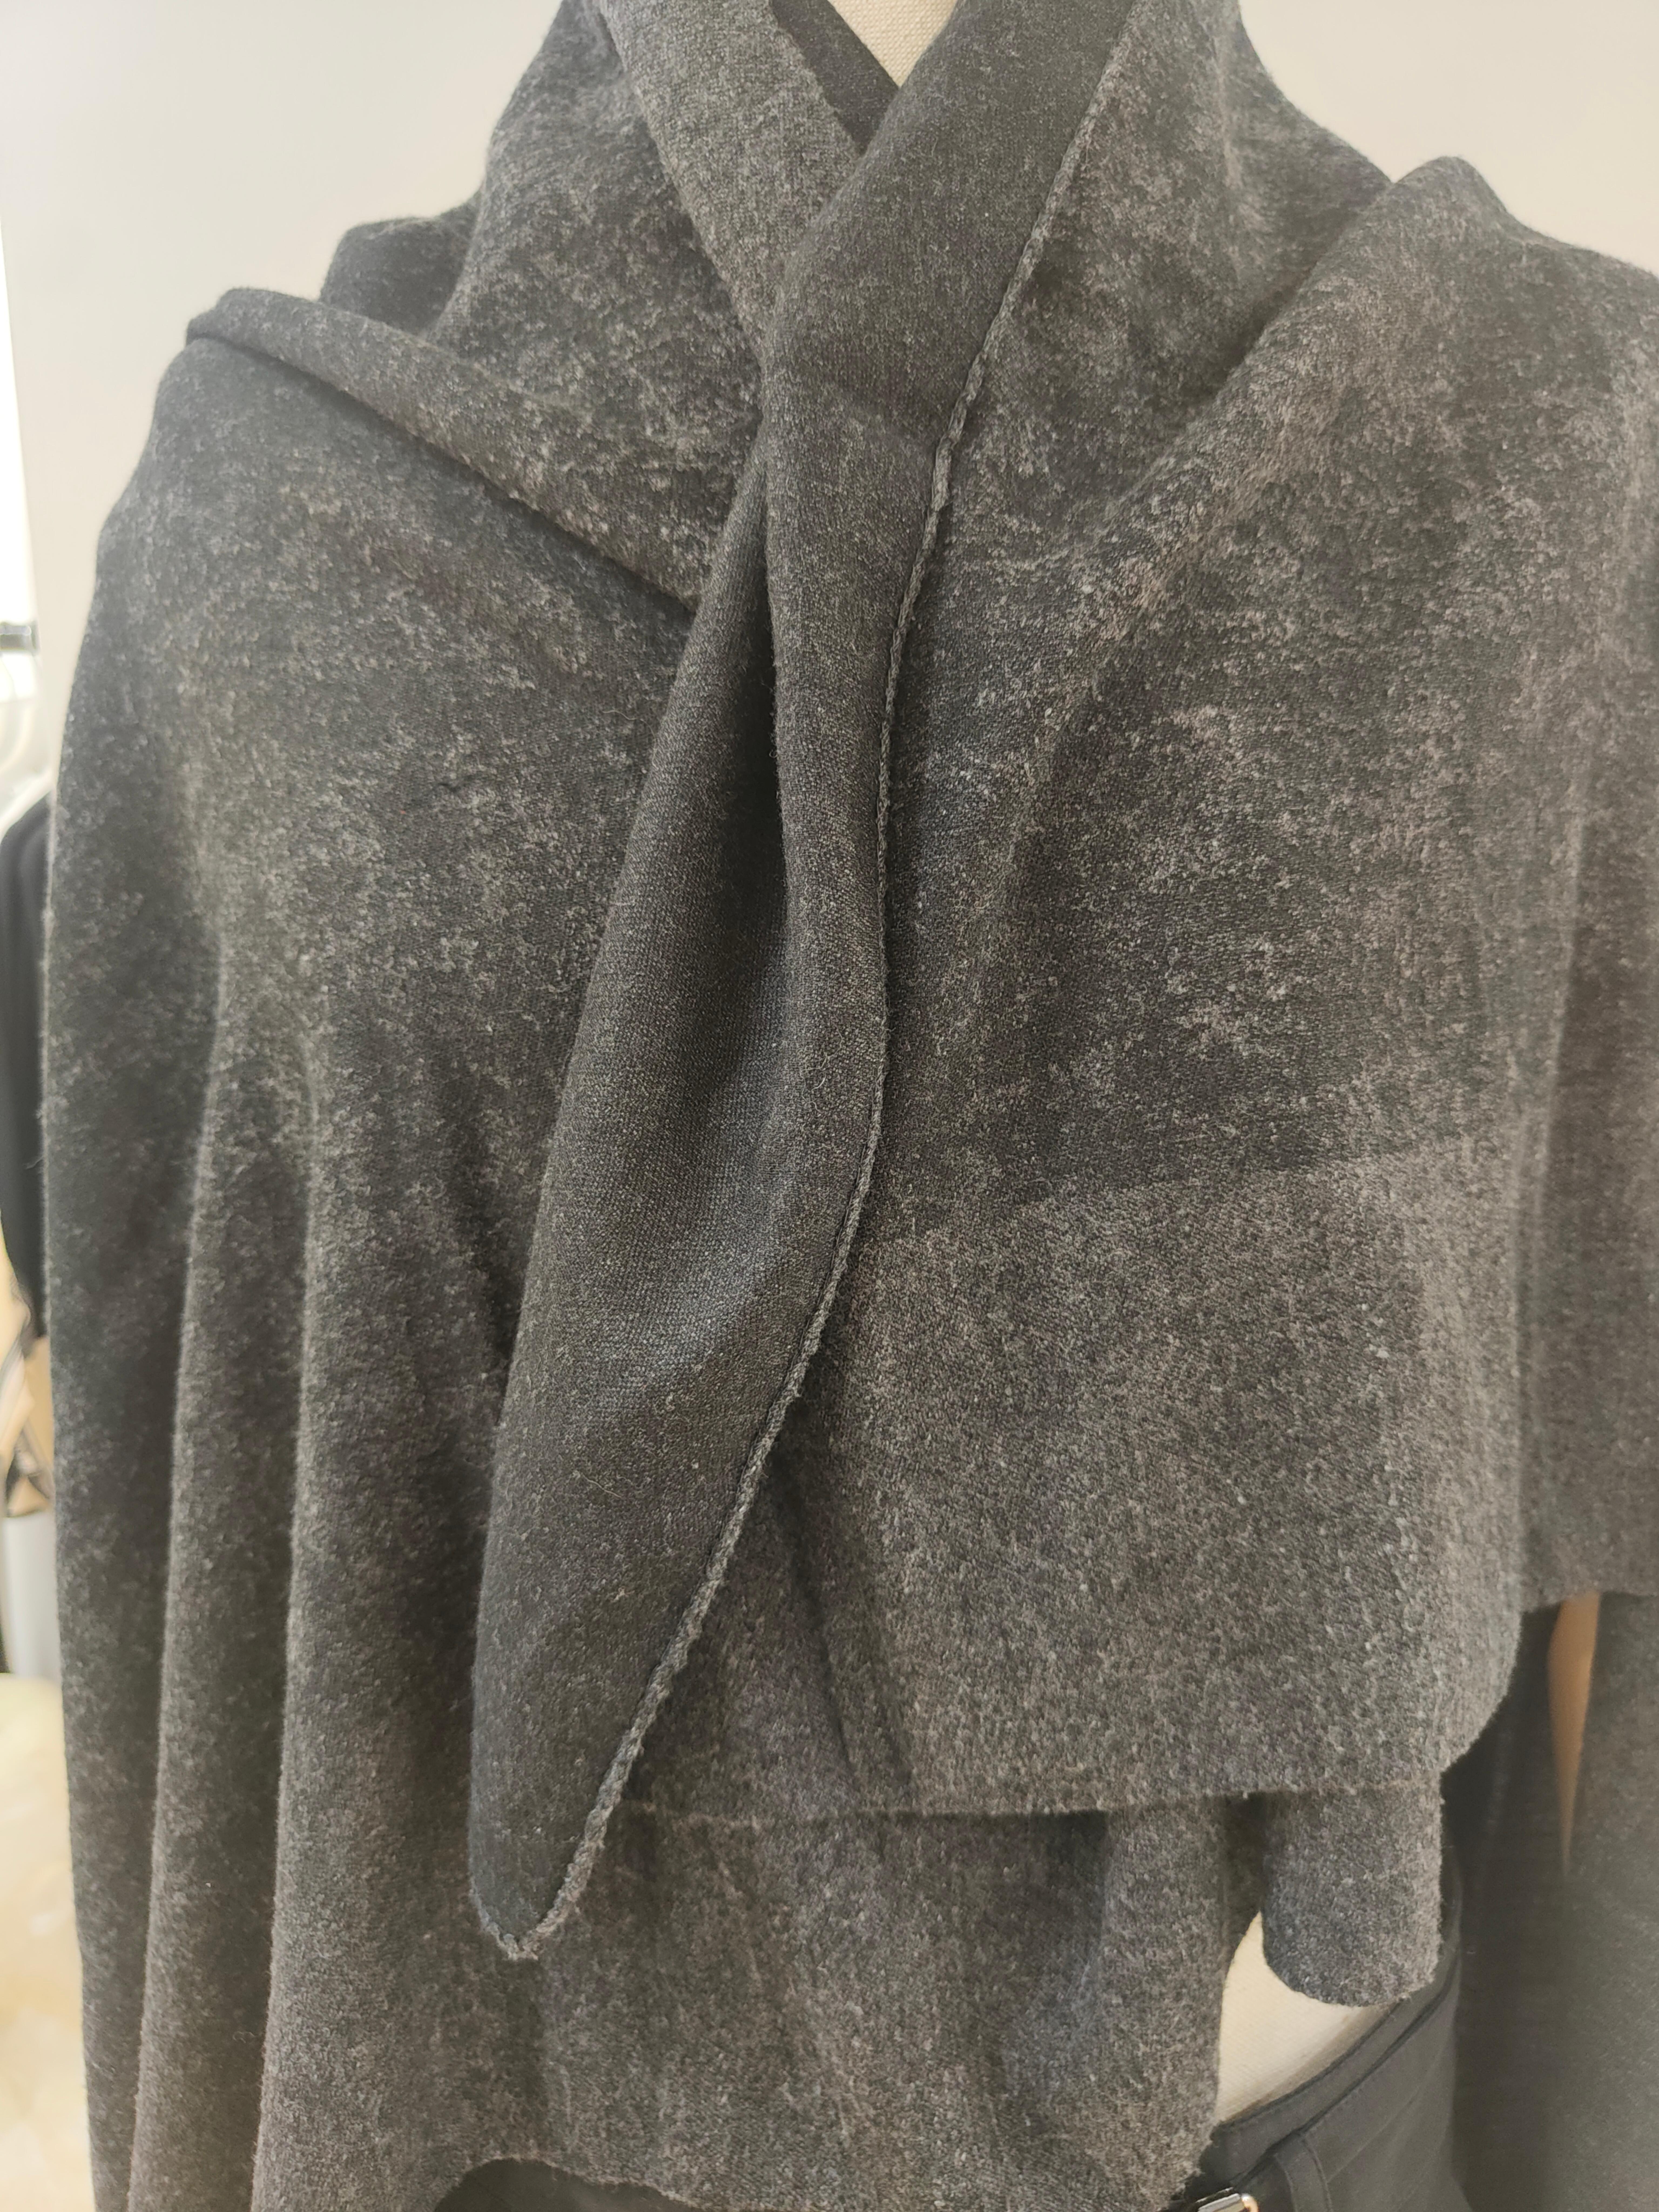 Balenciaga wool grey scarf
140*140 cm